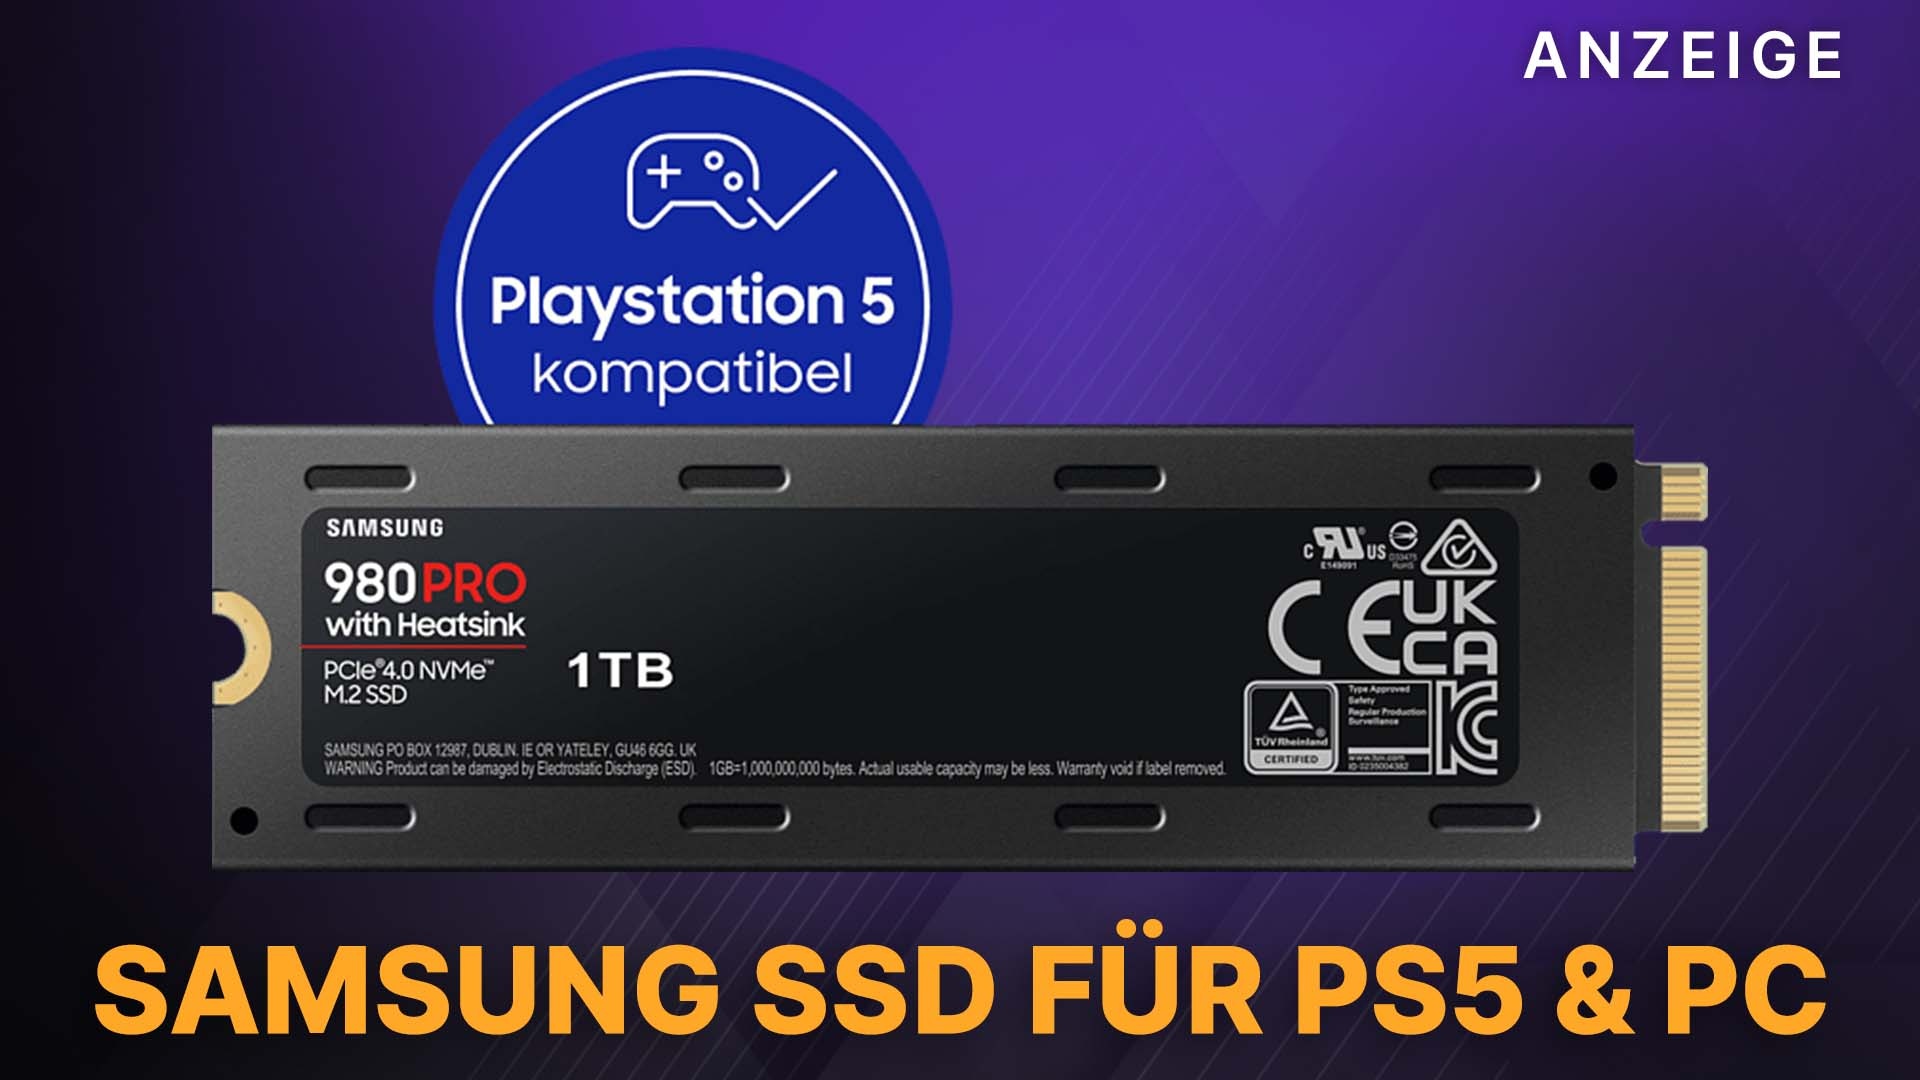 Diese SSD killt Ladezeiten 2TB Angebot auf der 980 Pro mit im und Amazon Samsung PS5: Heatsink